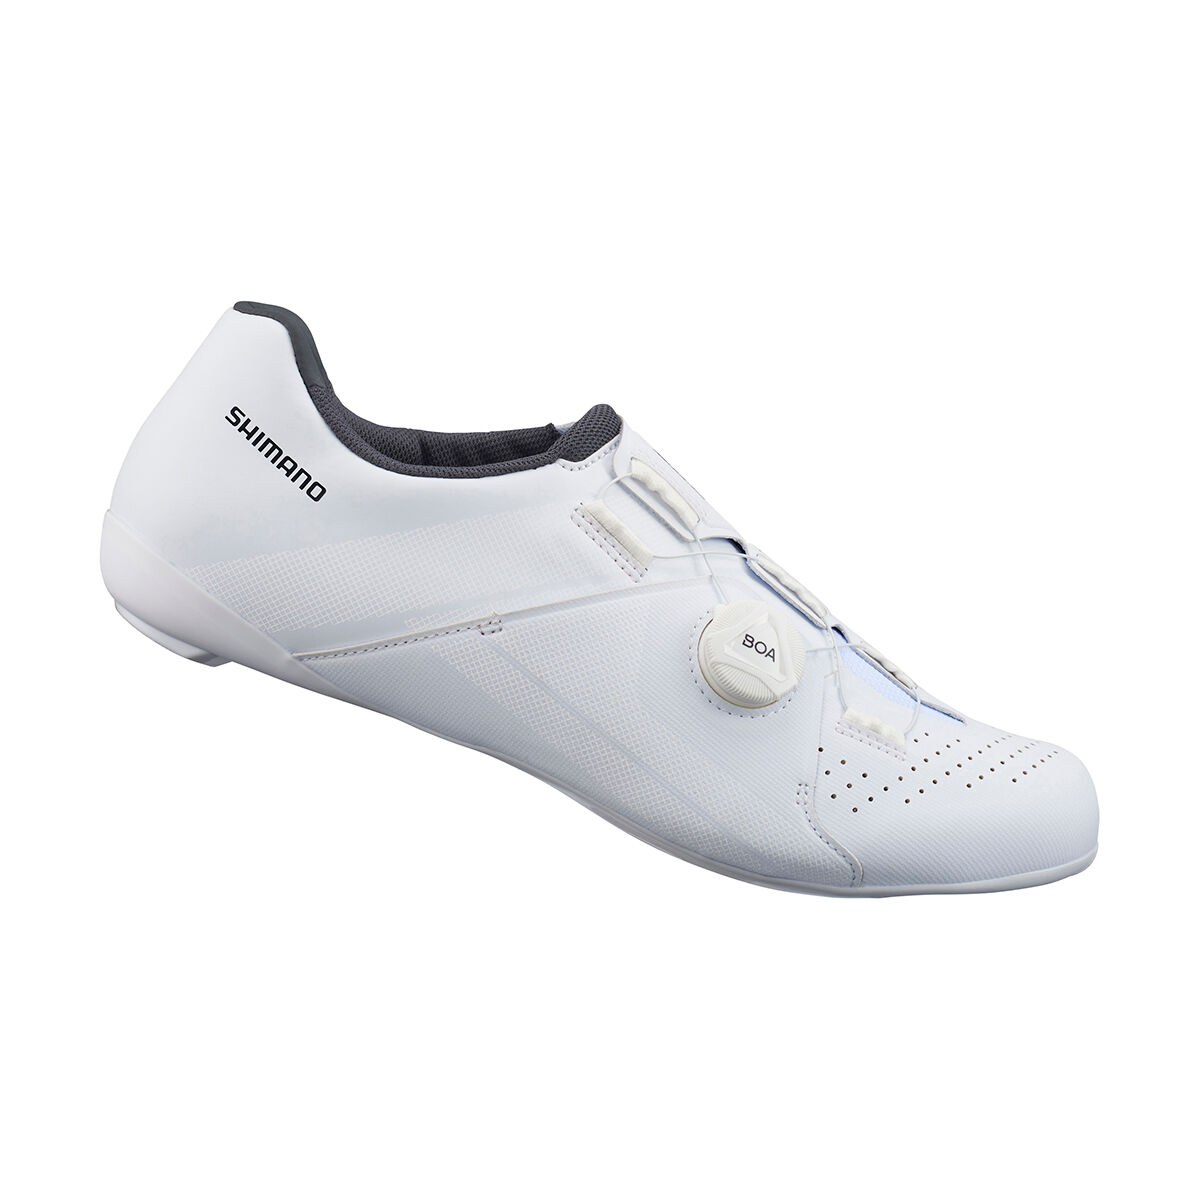 Shimano RC300 - Cycling shoes - Men's